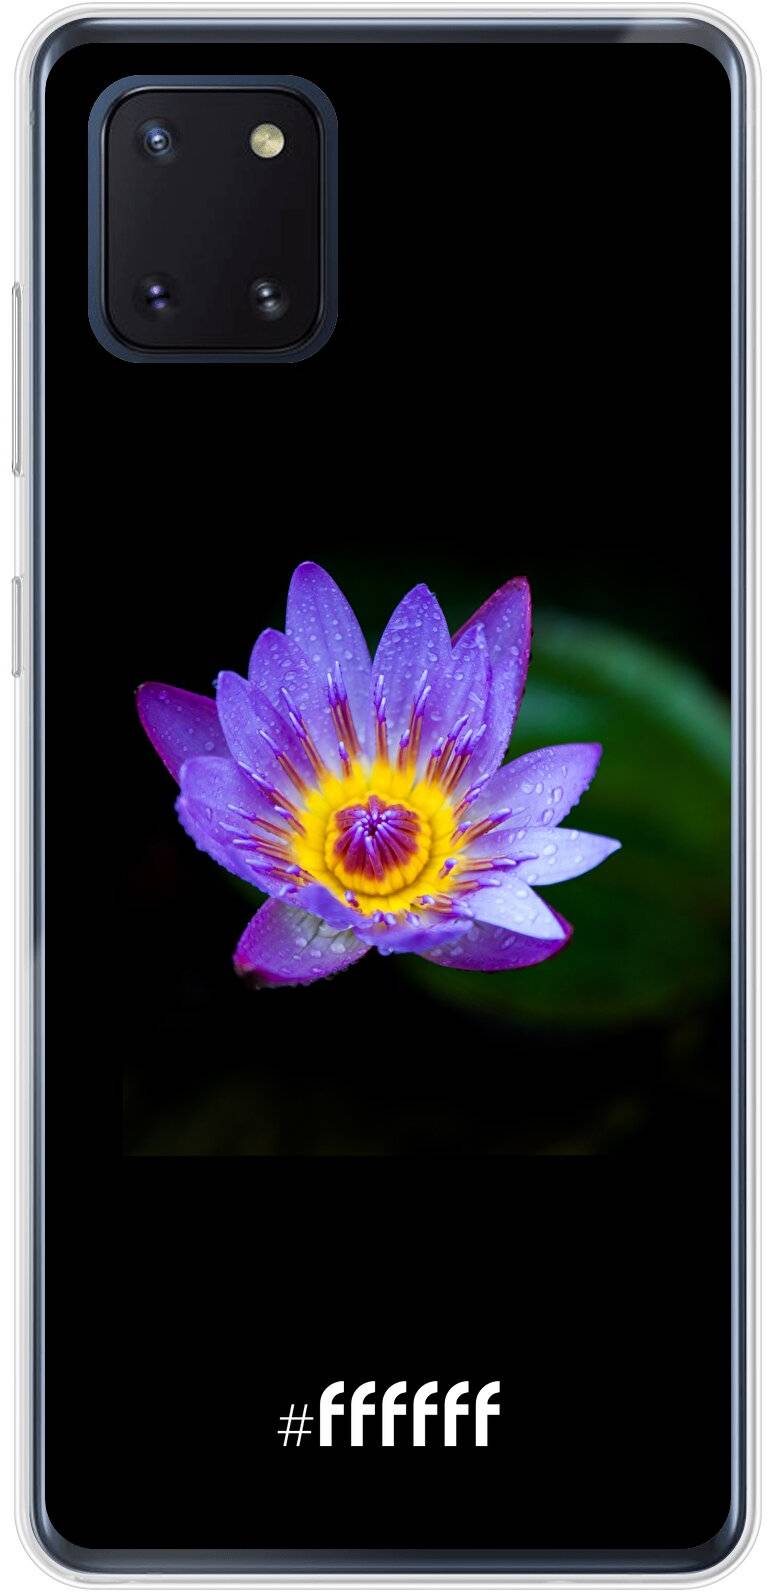 Purple Flower in the Dark Galaxy Note 10 Lite